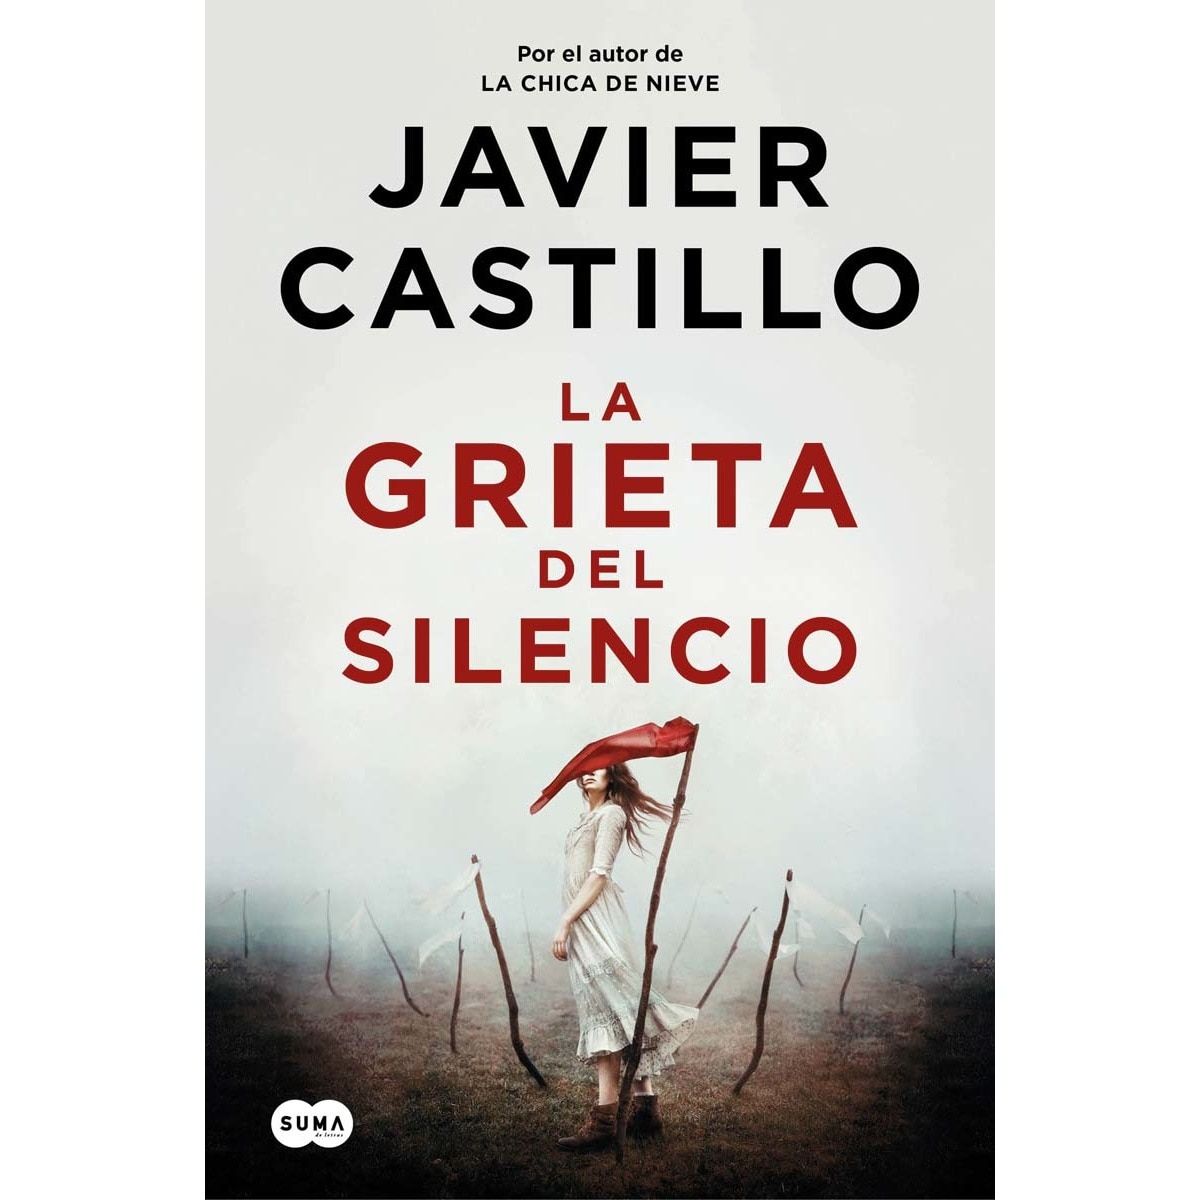 'La grieta del silencio', de Javier Castillo